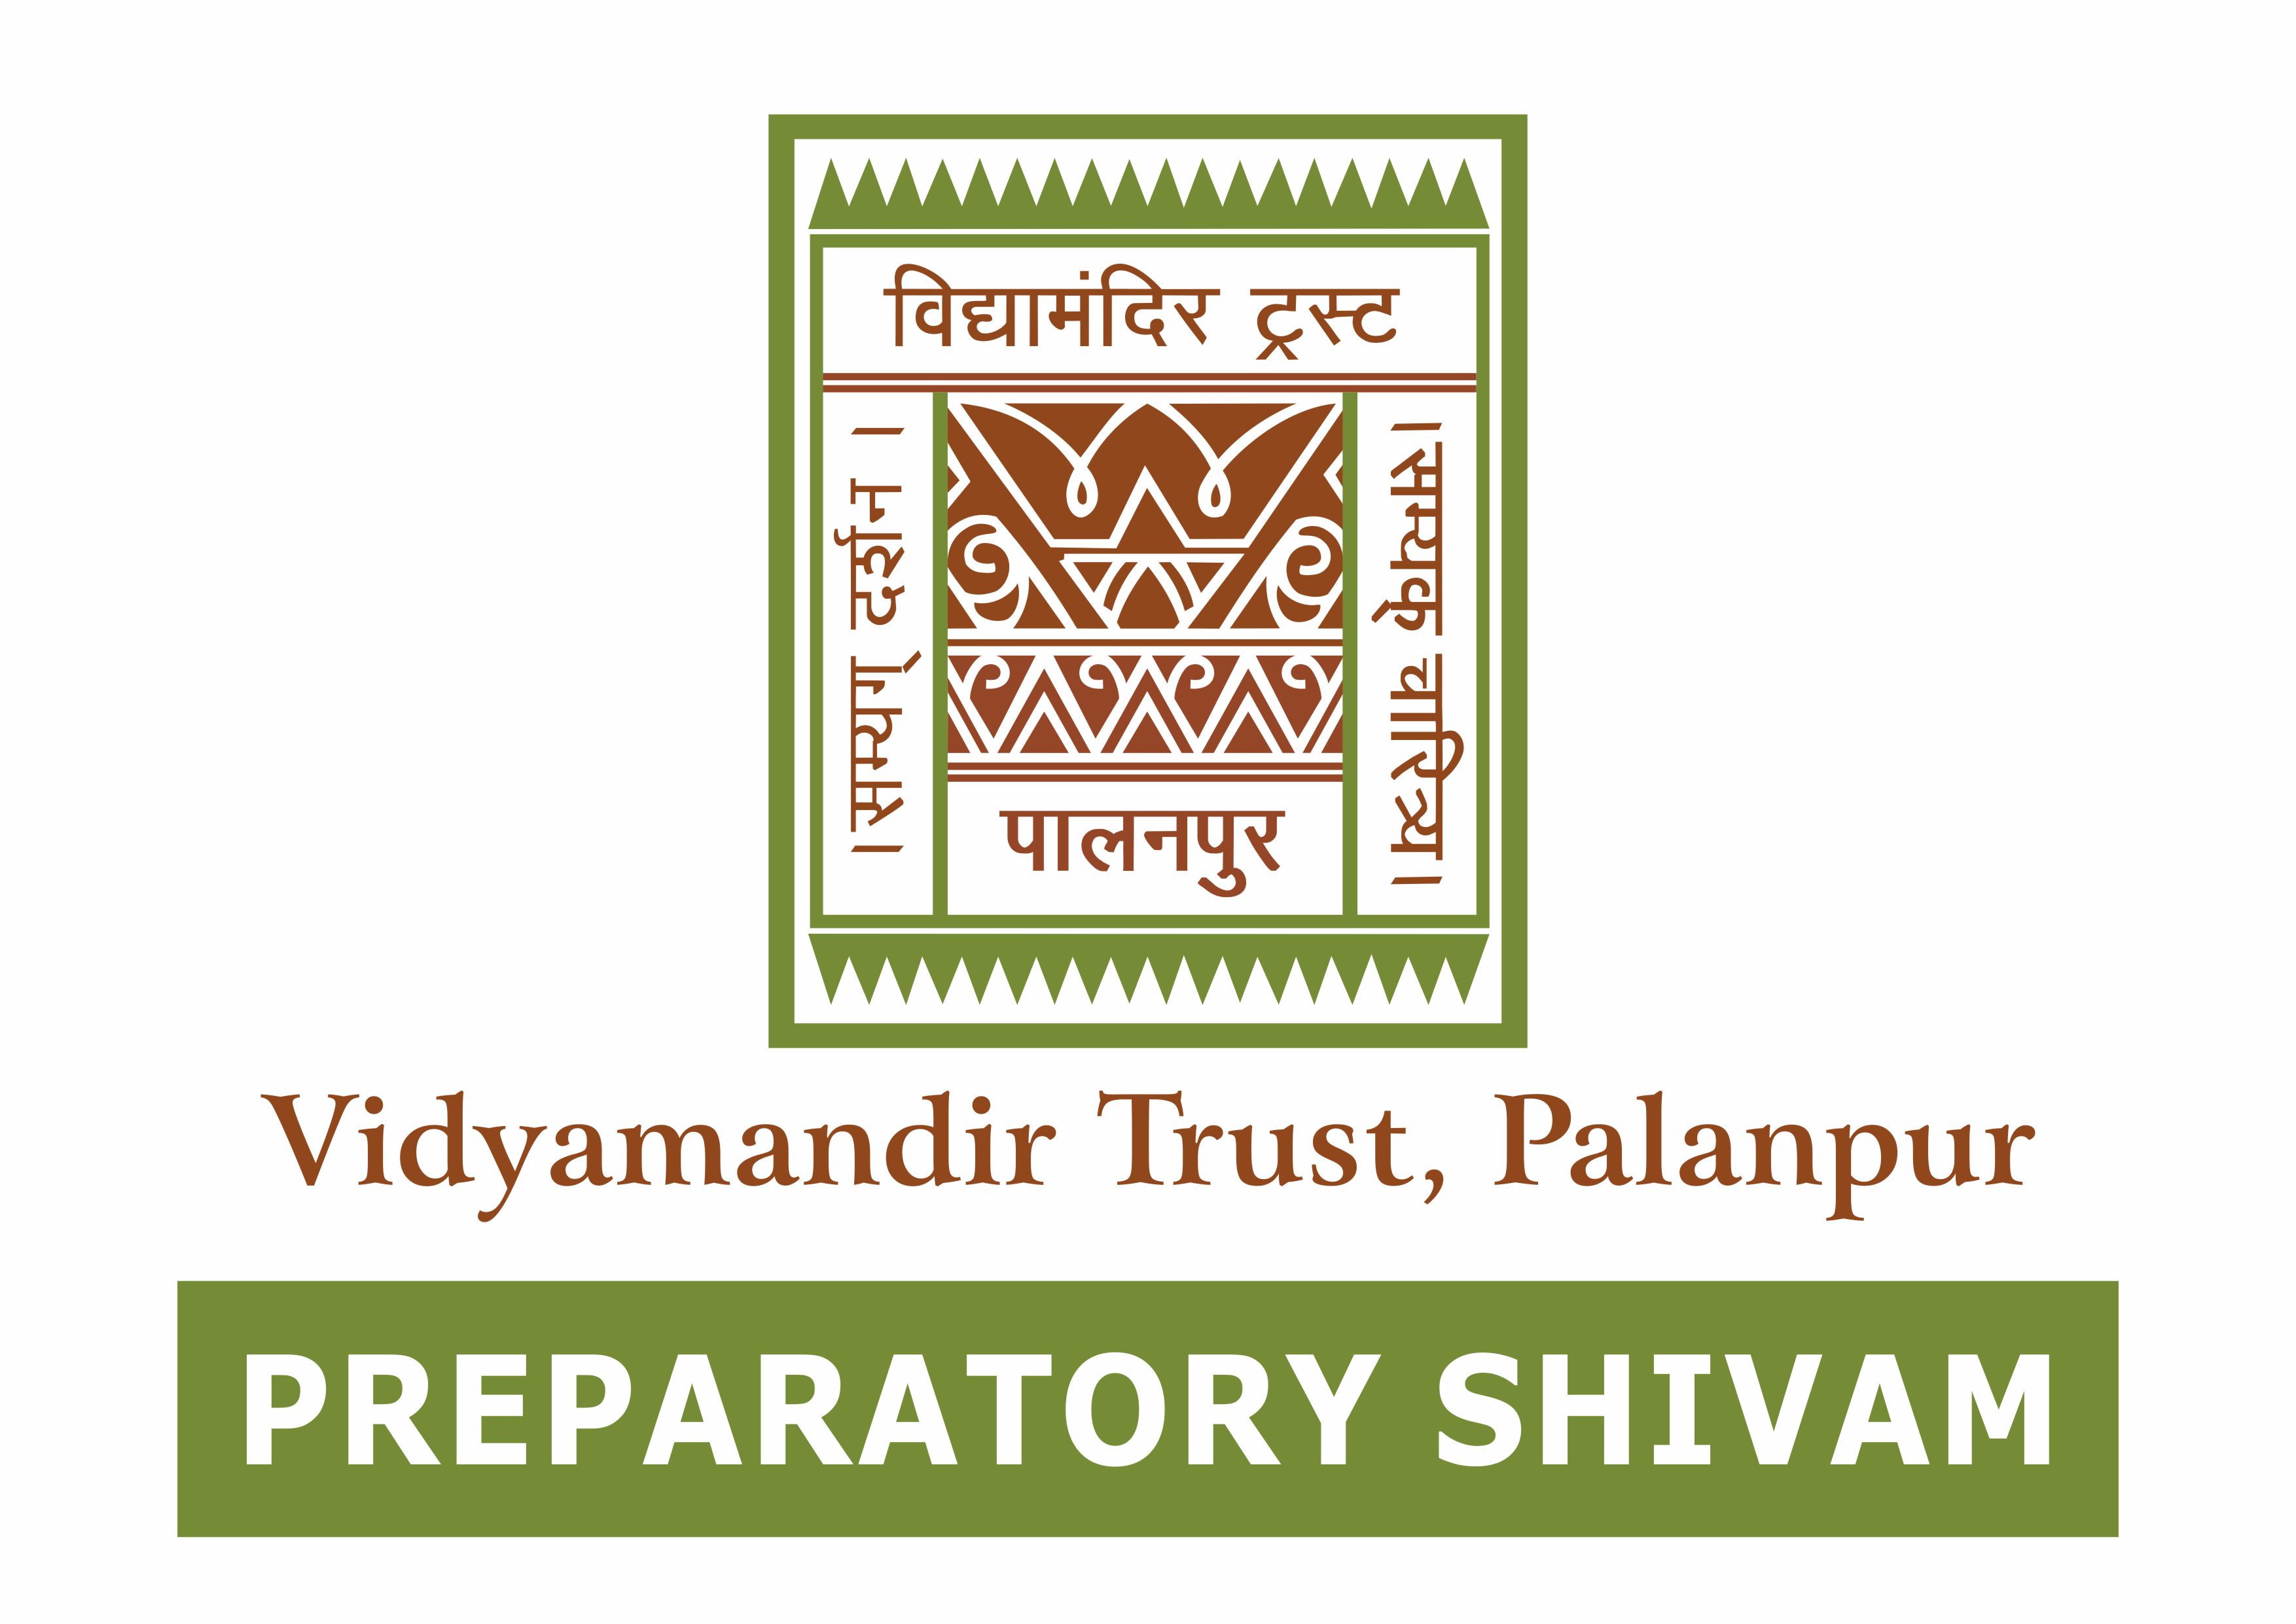 PREPARATORY Shivam - Vidyamandir Trust, Palanpur